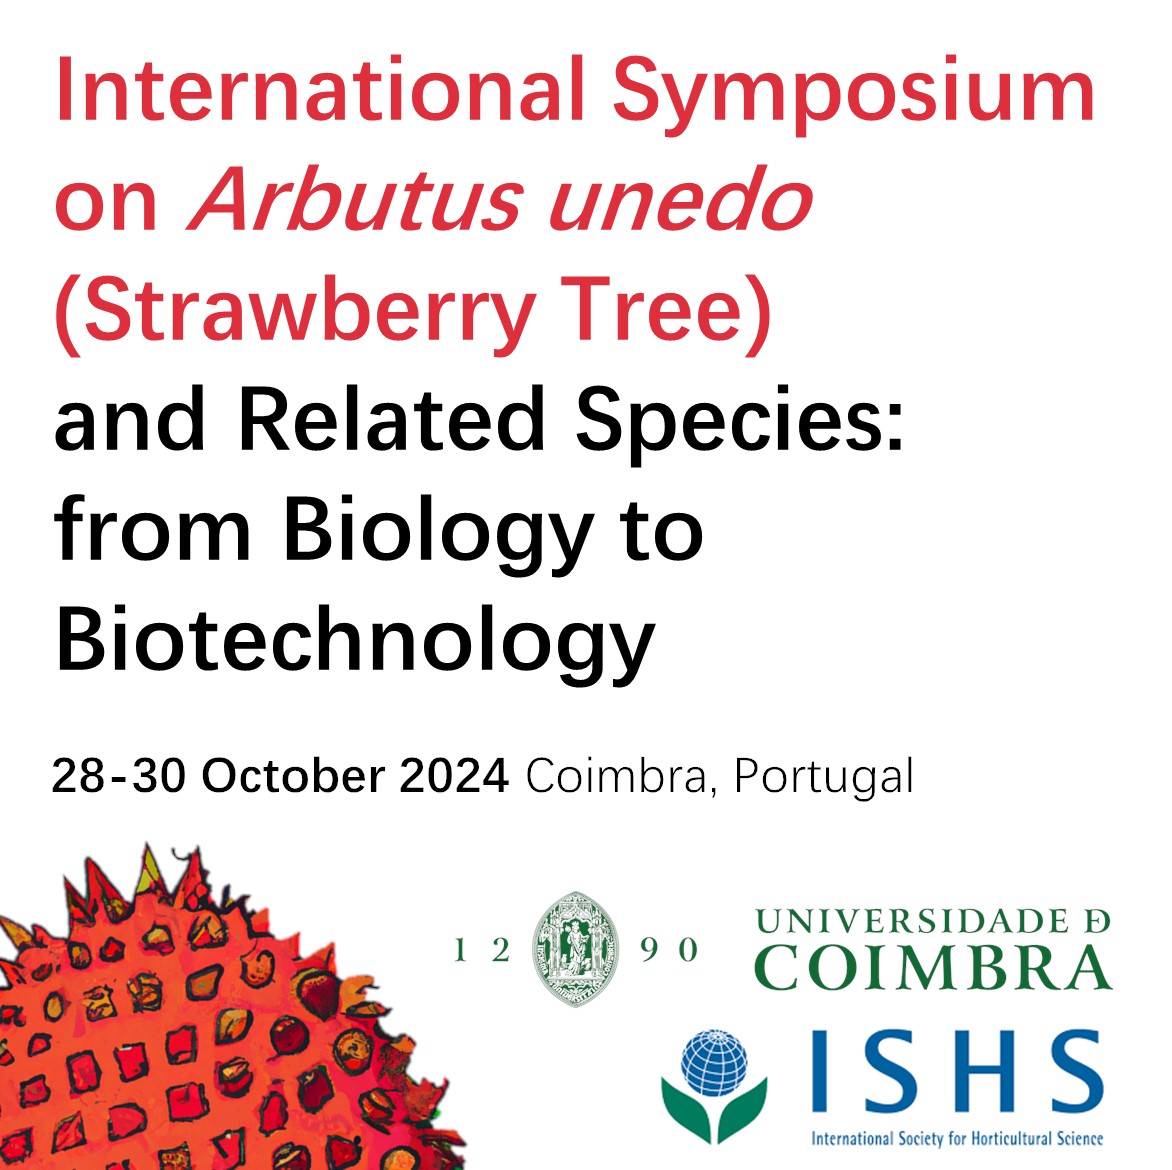 International Symposium on Arbutus unedo - Jantar